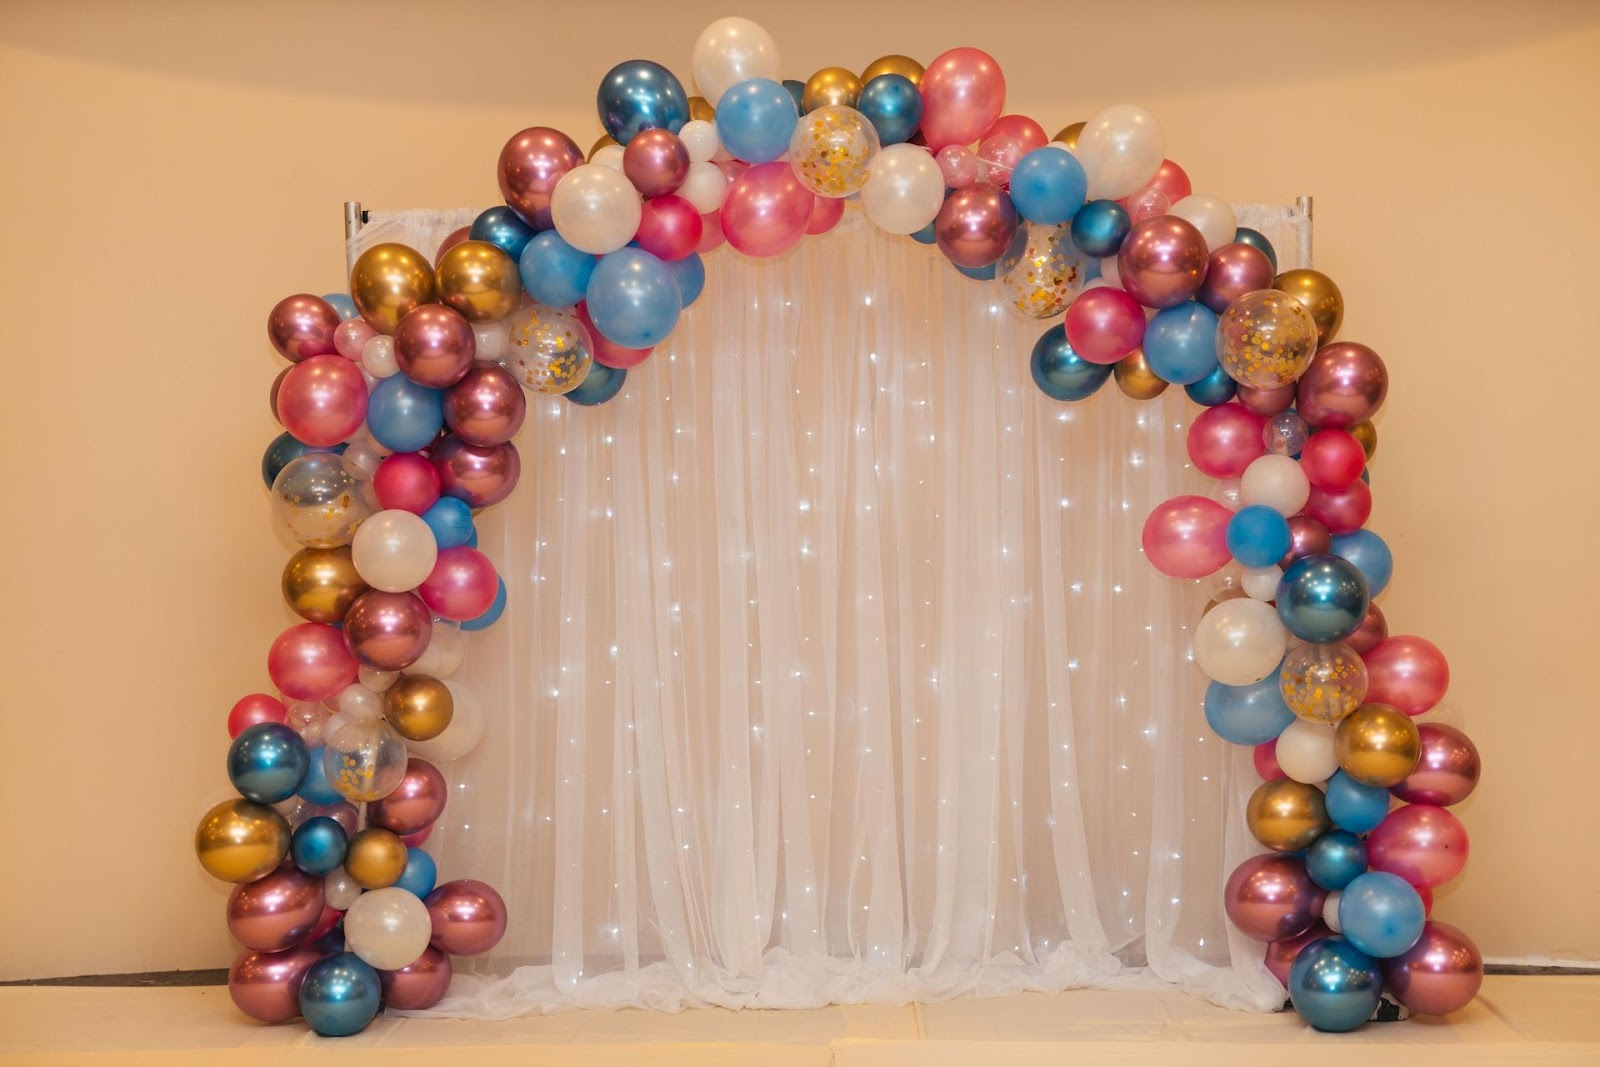 50 Awesome Balloon Wedding Ideas | Wedding balloon decorations, Wedding  balloons, Diy wedding decorations